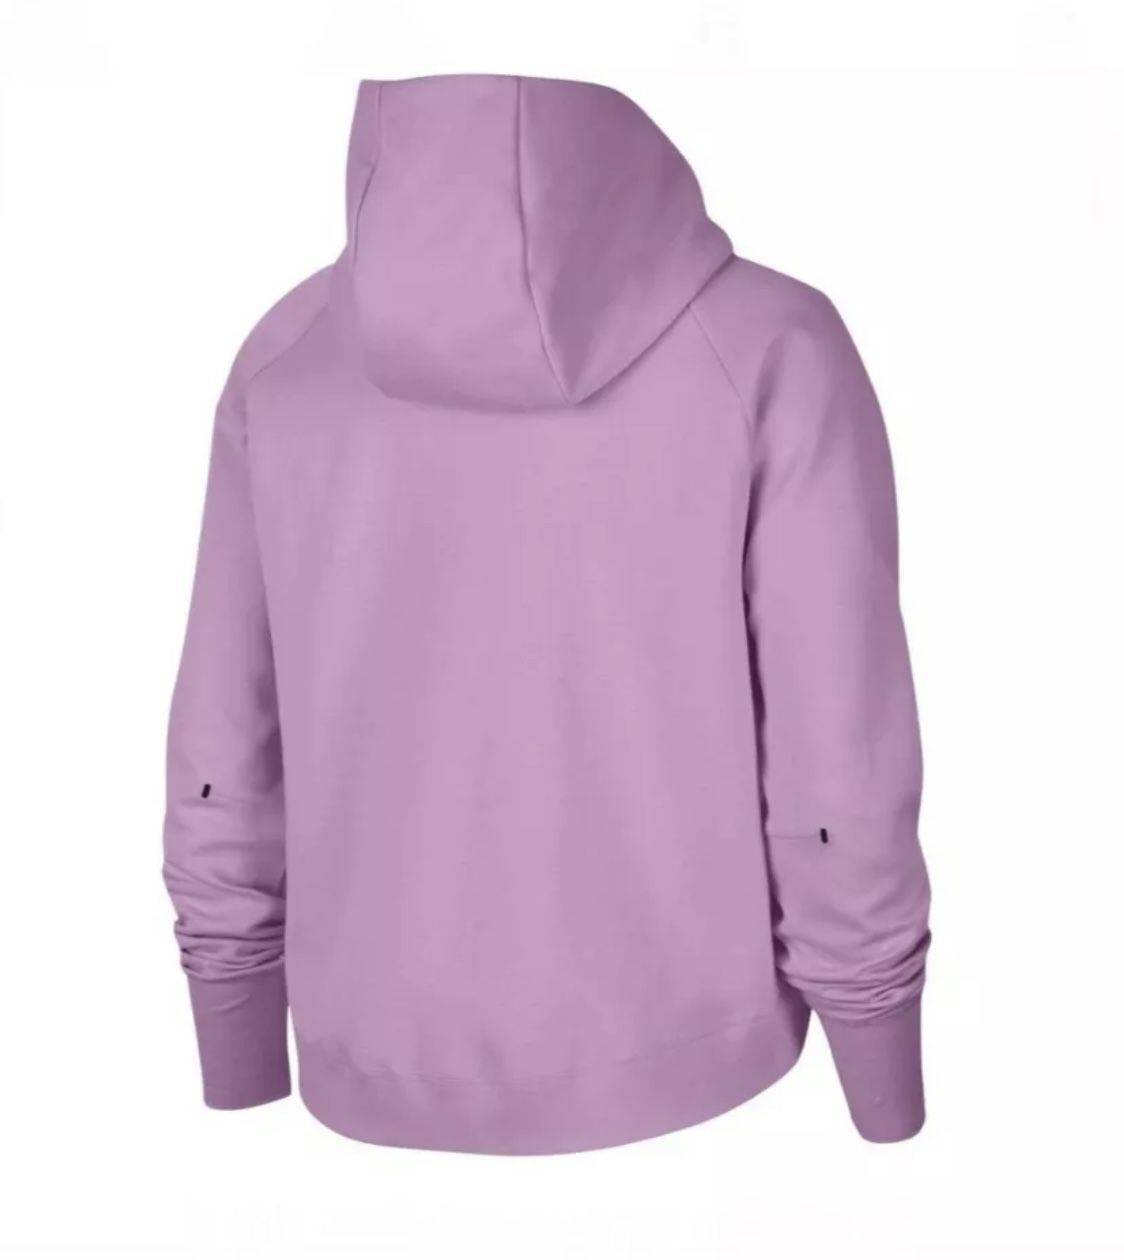 Nike Sportswear Full Zip Tech Fleece Pink Jacket CW4298-680 Women’s Size XS